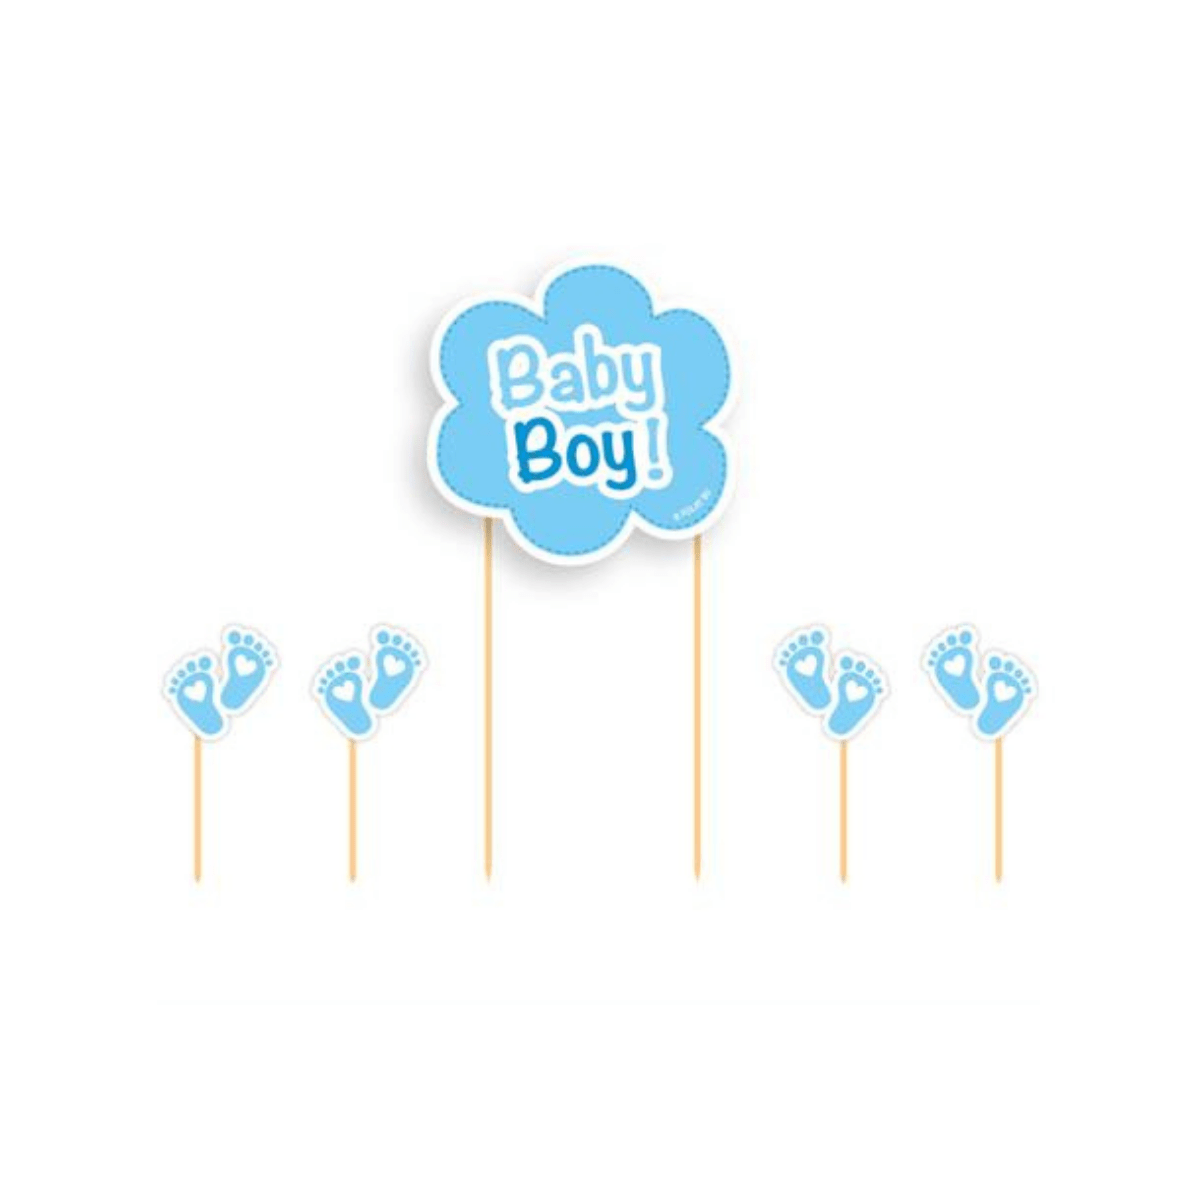 Baby Boy- Kaketopper på pinne, blå